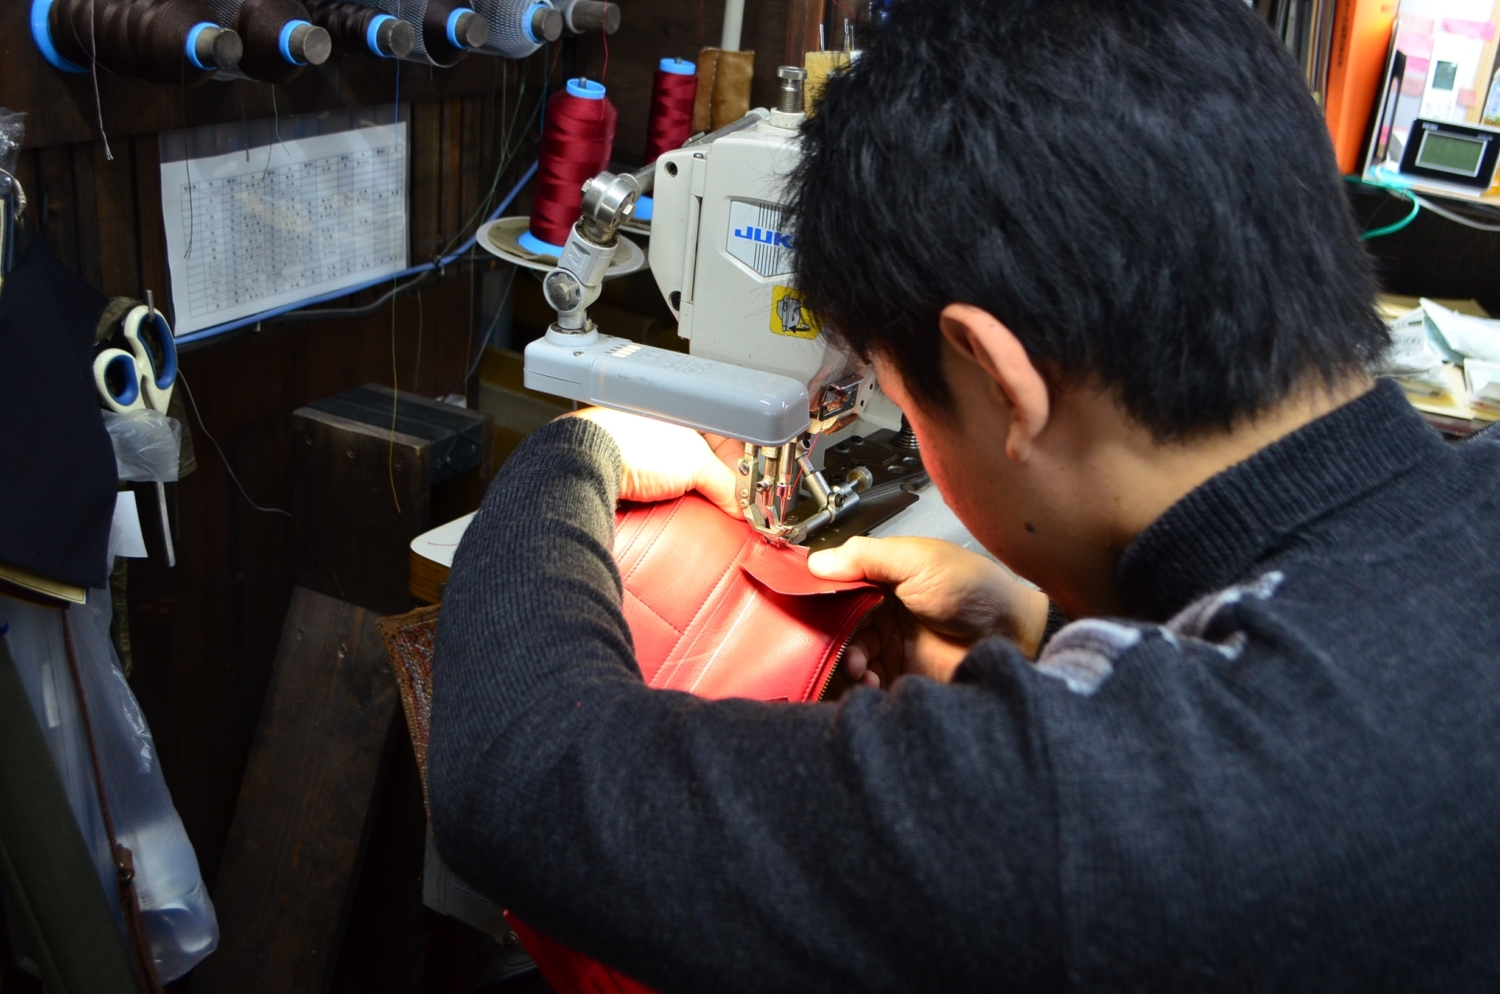 神戸元町のオーダーメイド店創作鞄槌井の職人が工房で手作りしている様子